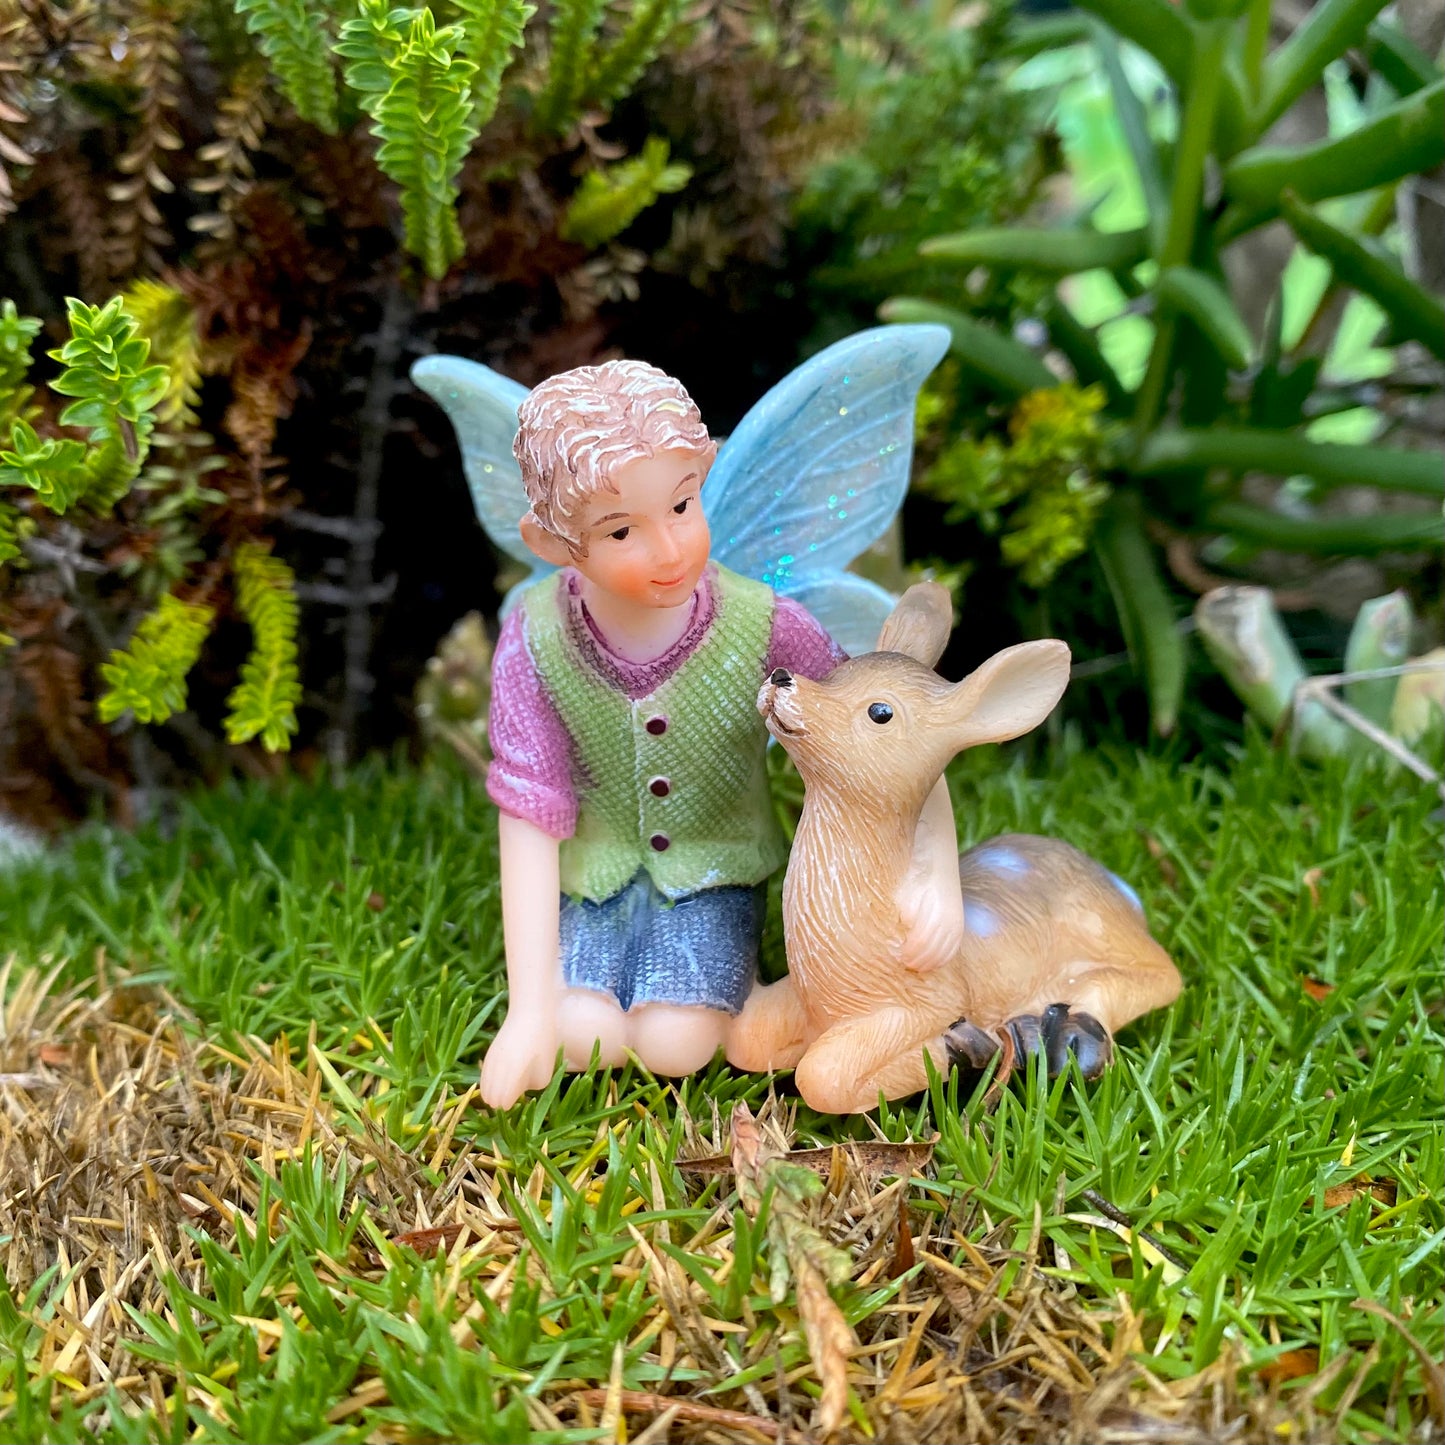 Fairy Ethan With A Deer, Australian Fairy Gardens, Fairies